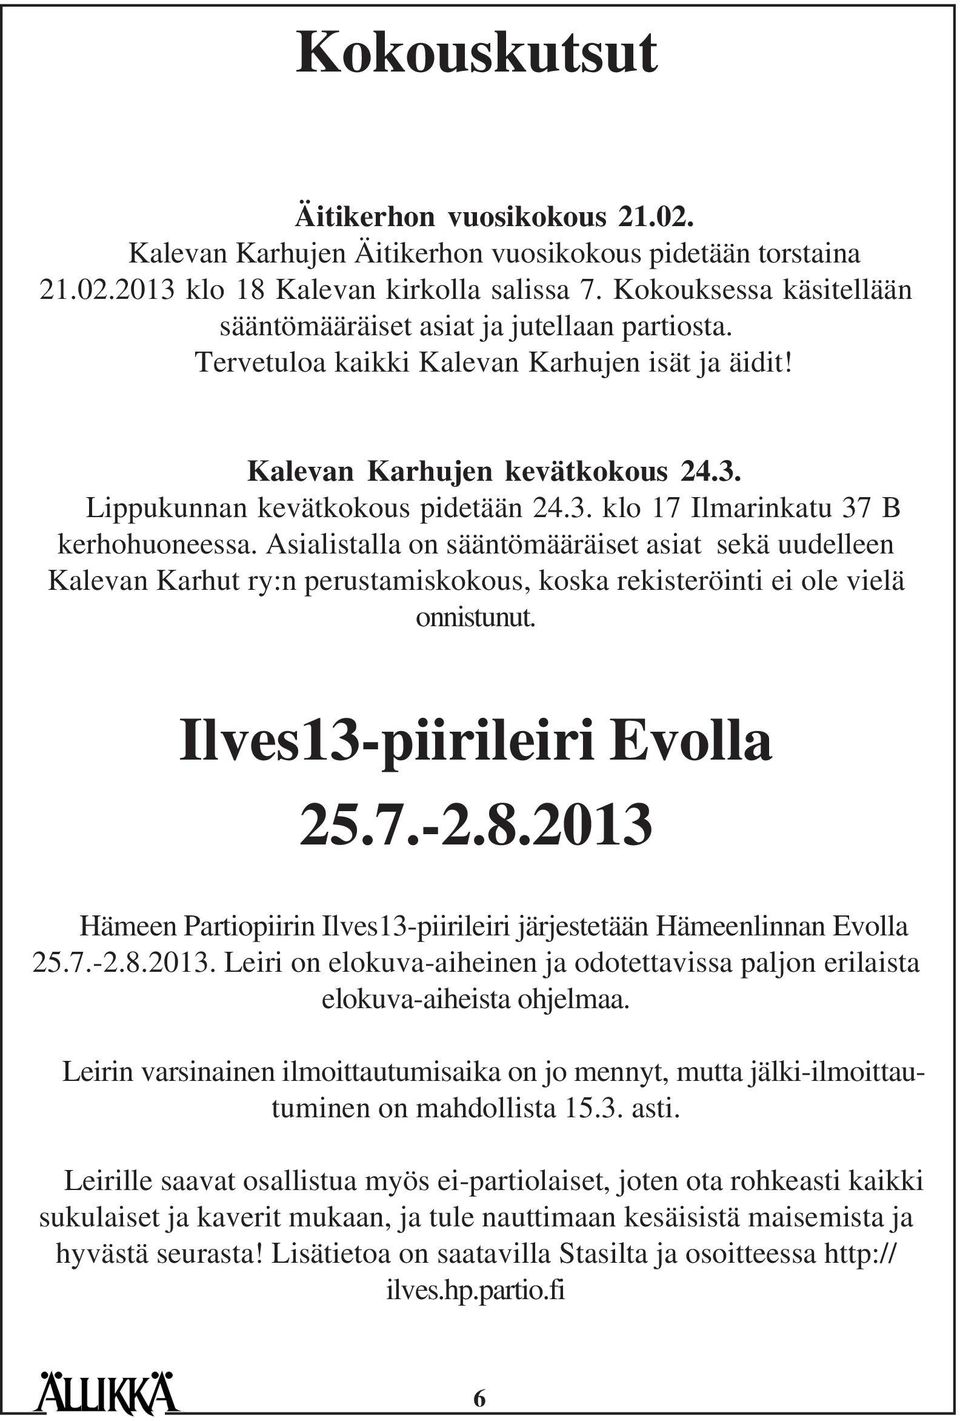 Asialistalla on sääntömääräiset asiat sekä uudelleen Kalevan Karhut ry:n perustamiskokous, koska rekisteröinti ei ole vielä onnistunut. Ilves13-piirileiri Evolla 25.7.-2.8.